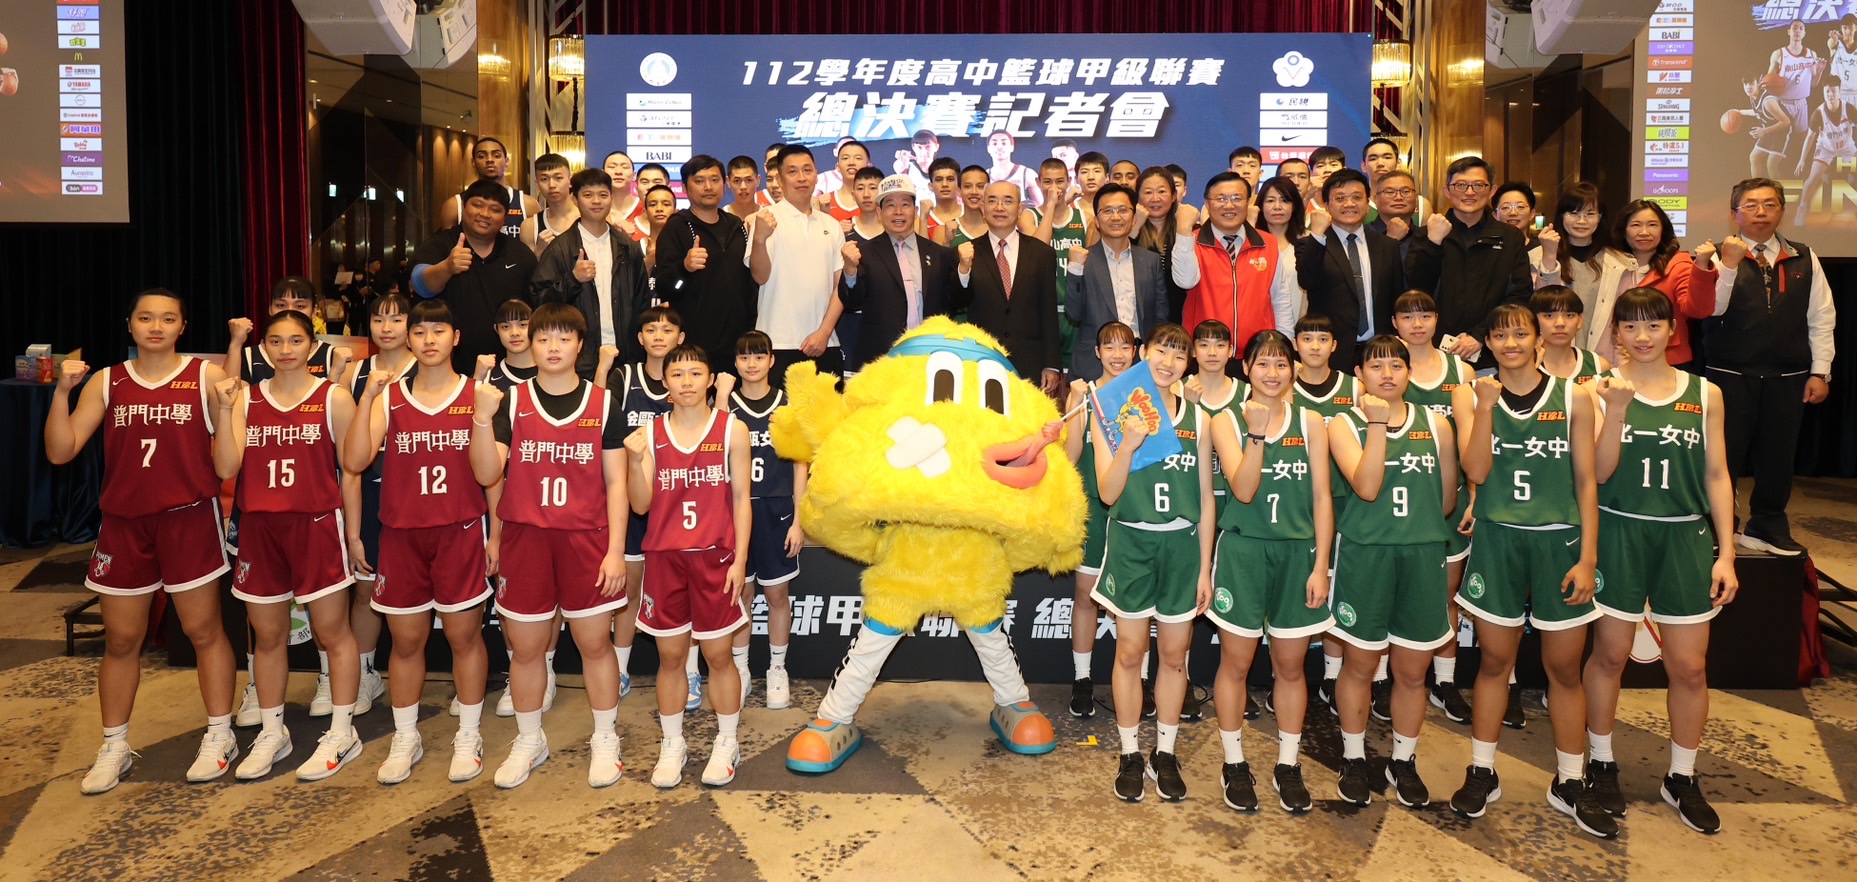 112學年度HBL高中籃球甲級聯賽決賽，3/16至17日將在台北小巨蛋舉辦男女組四強決賽。圖/教育部提供